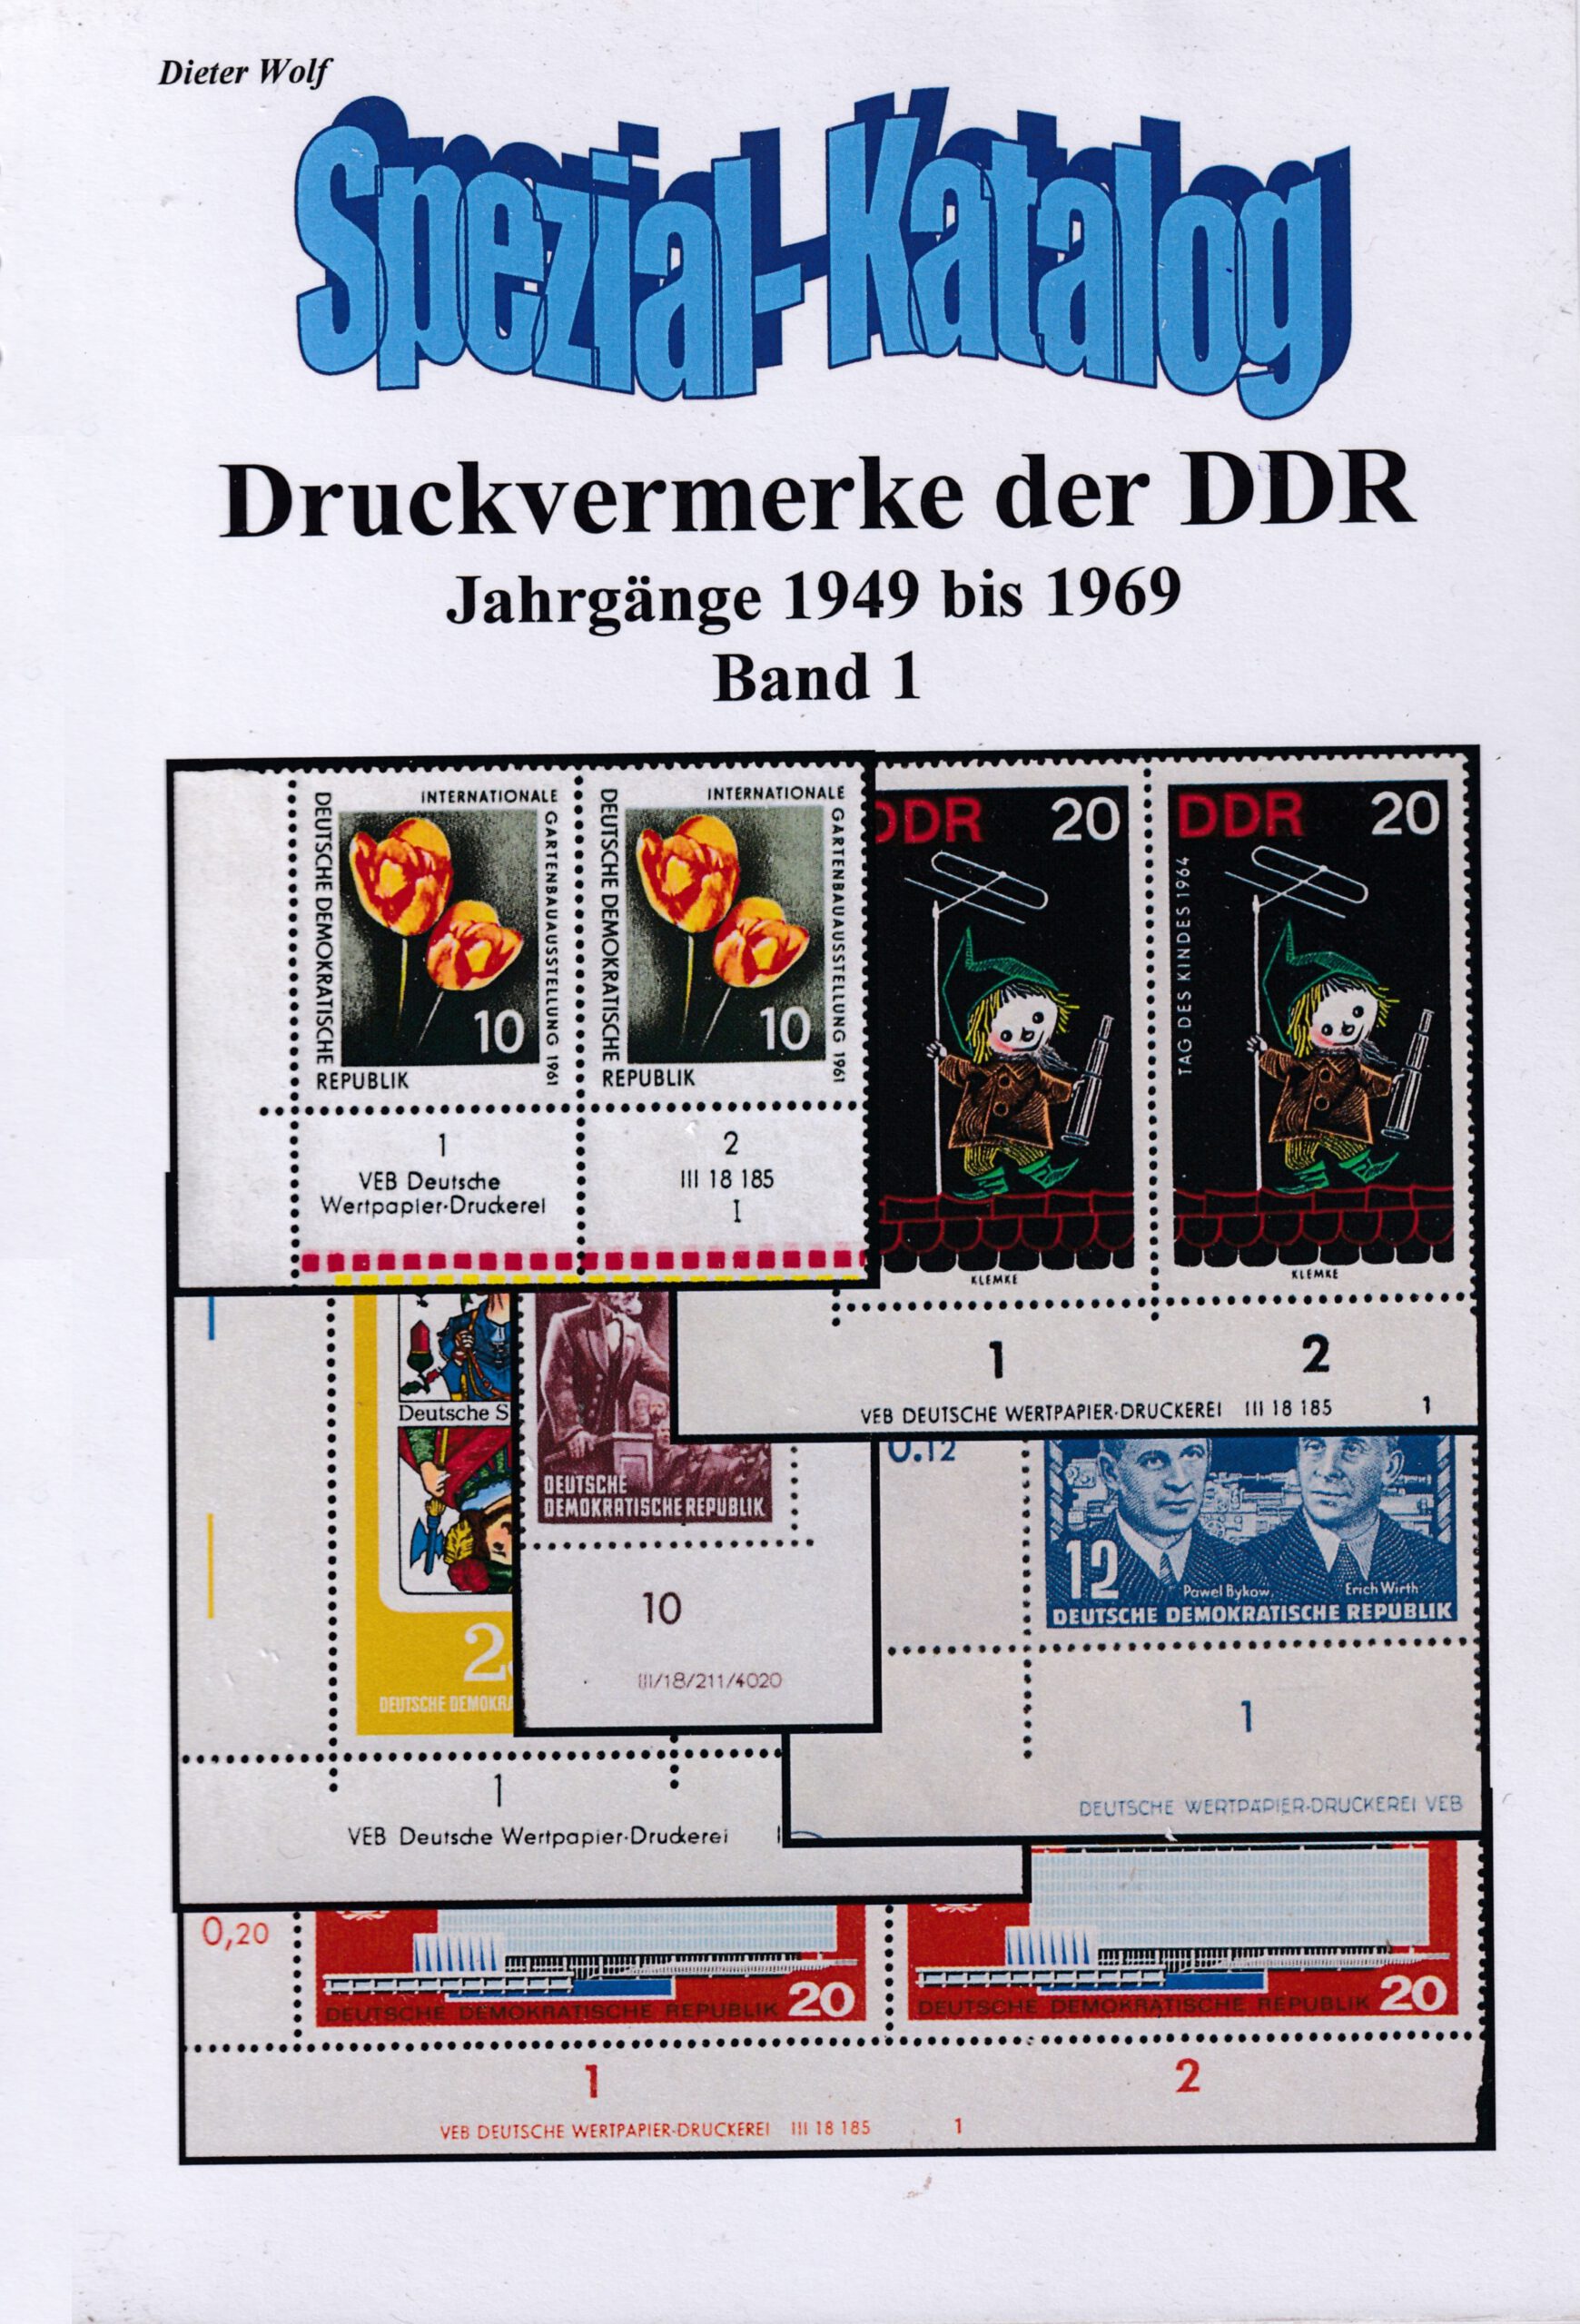 DDR Philatelie Literatur Druckvermerke Katalog